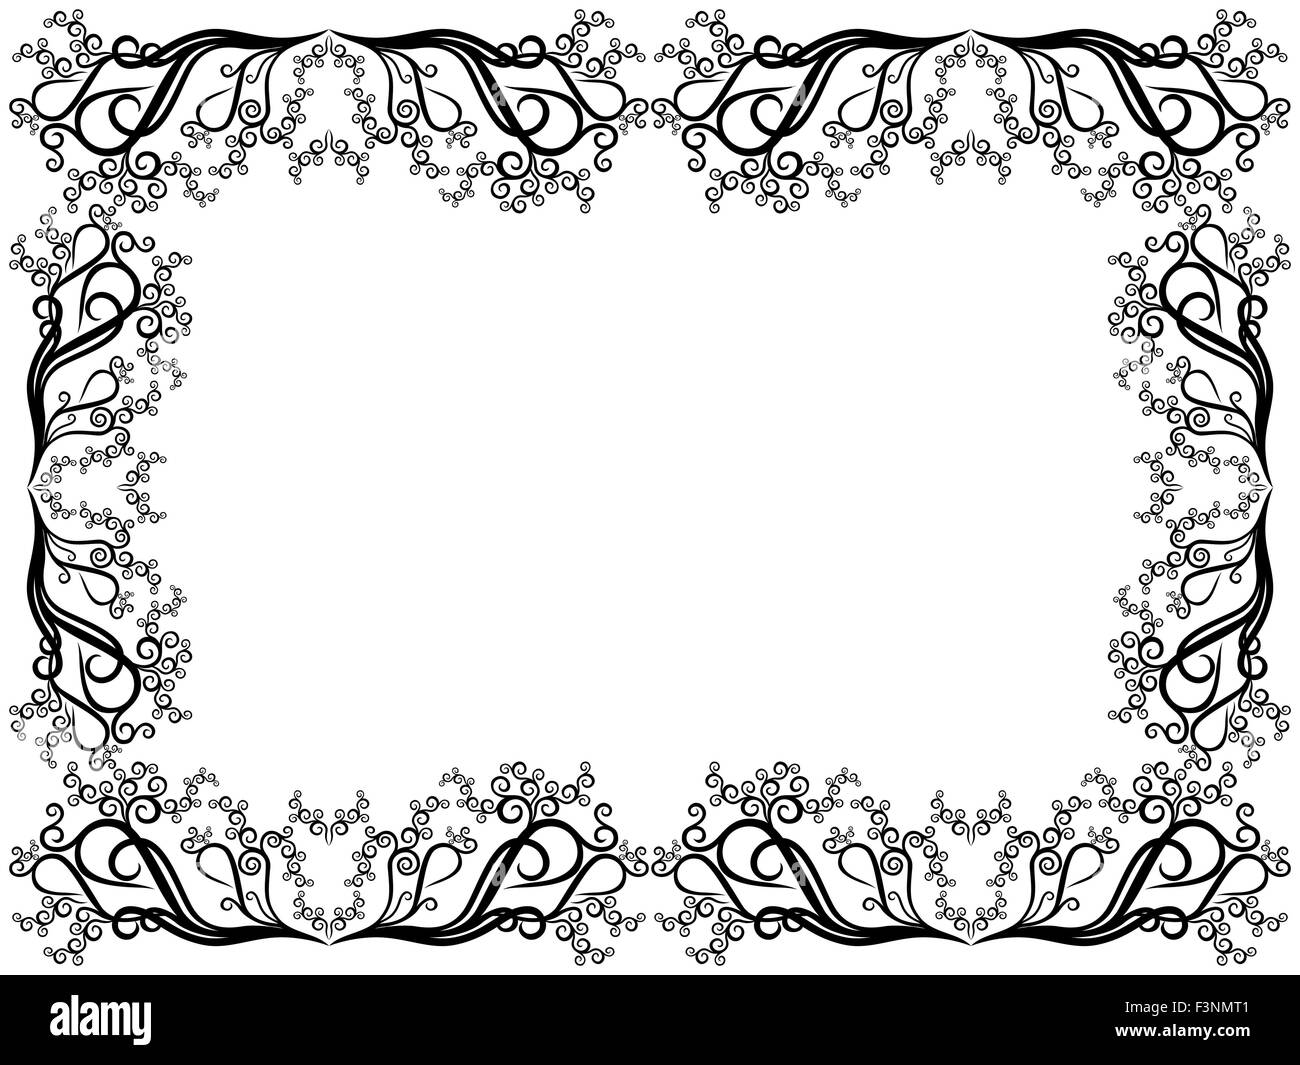 Cadre noir et blanc de blancs avec des éléments floraux swirl, dessin à la main les images vectorielles Illustration de Vecteur